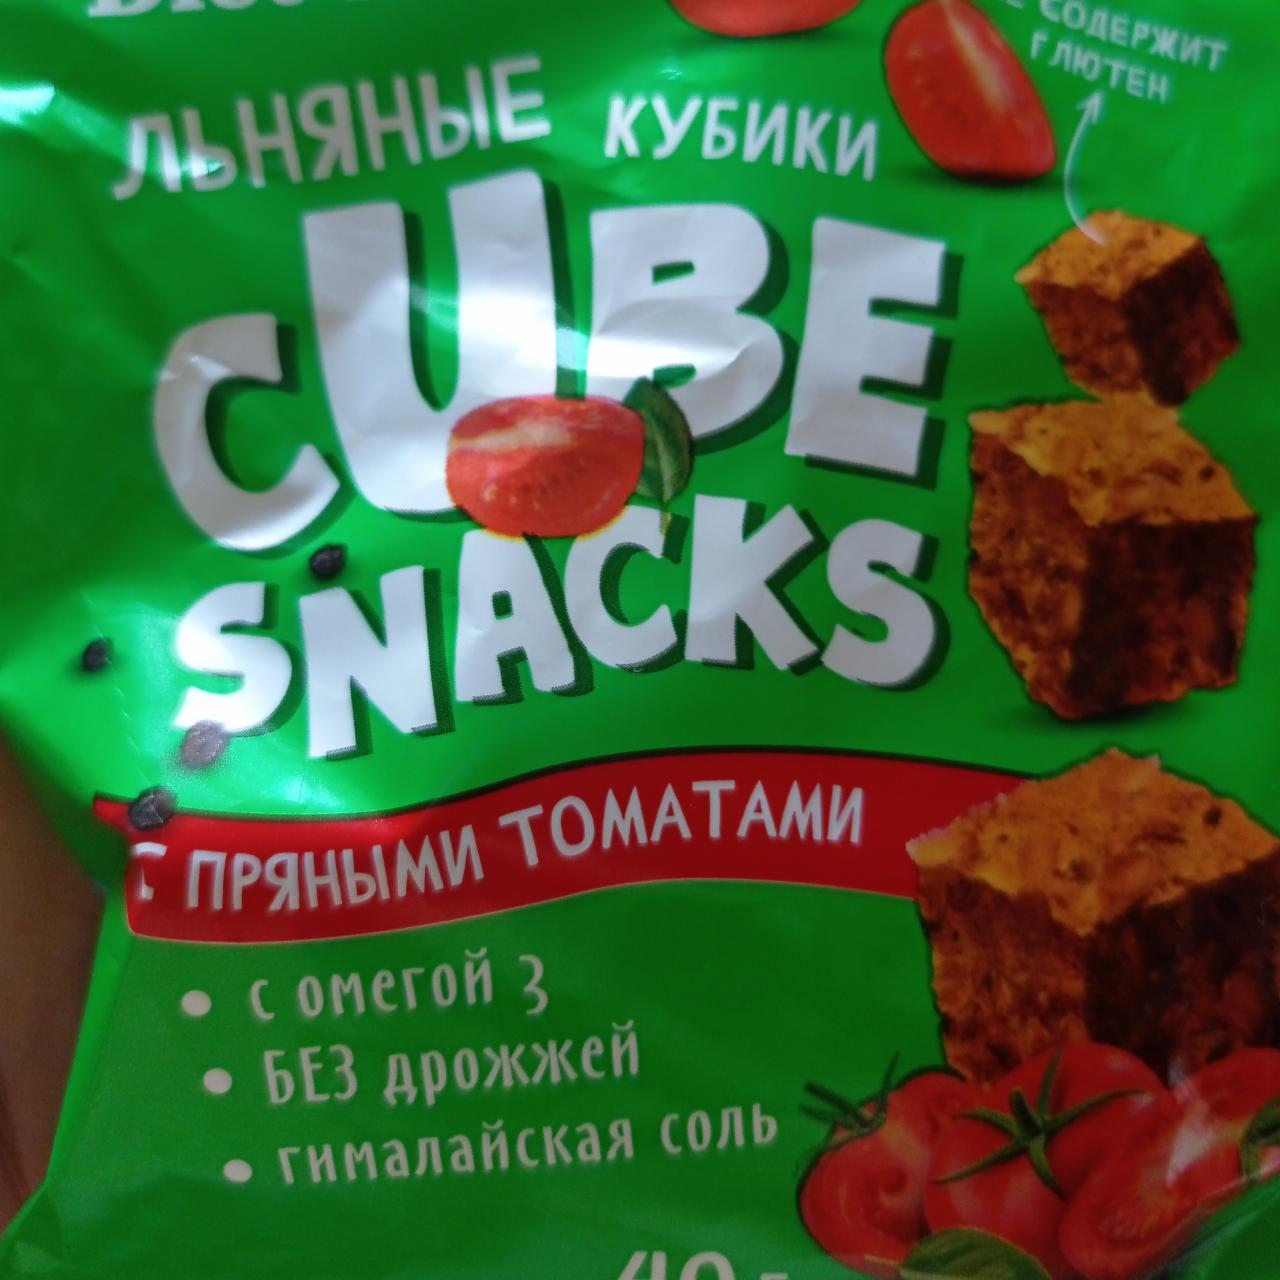 Фото - Льняные кубики с пряными томатами Компас здоровья